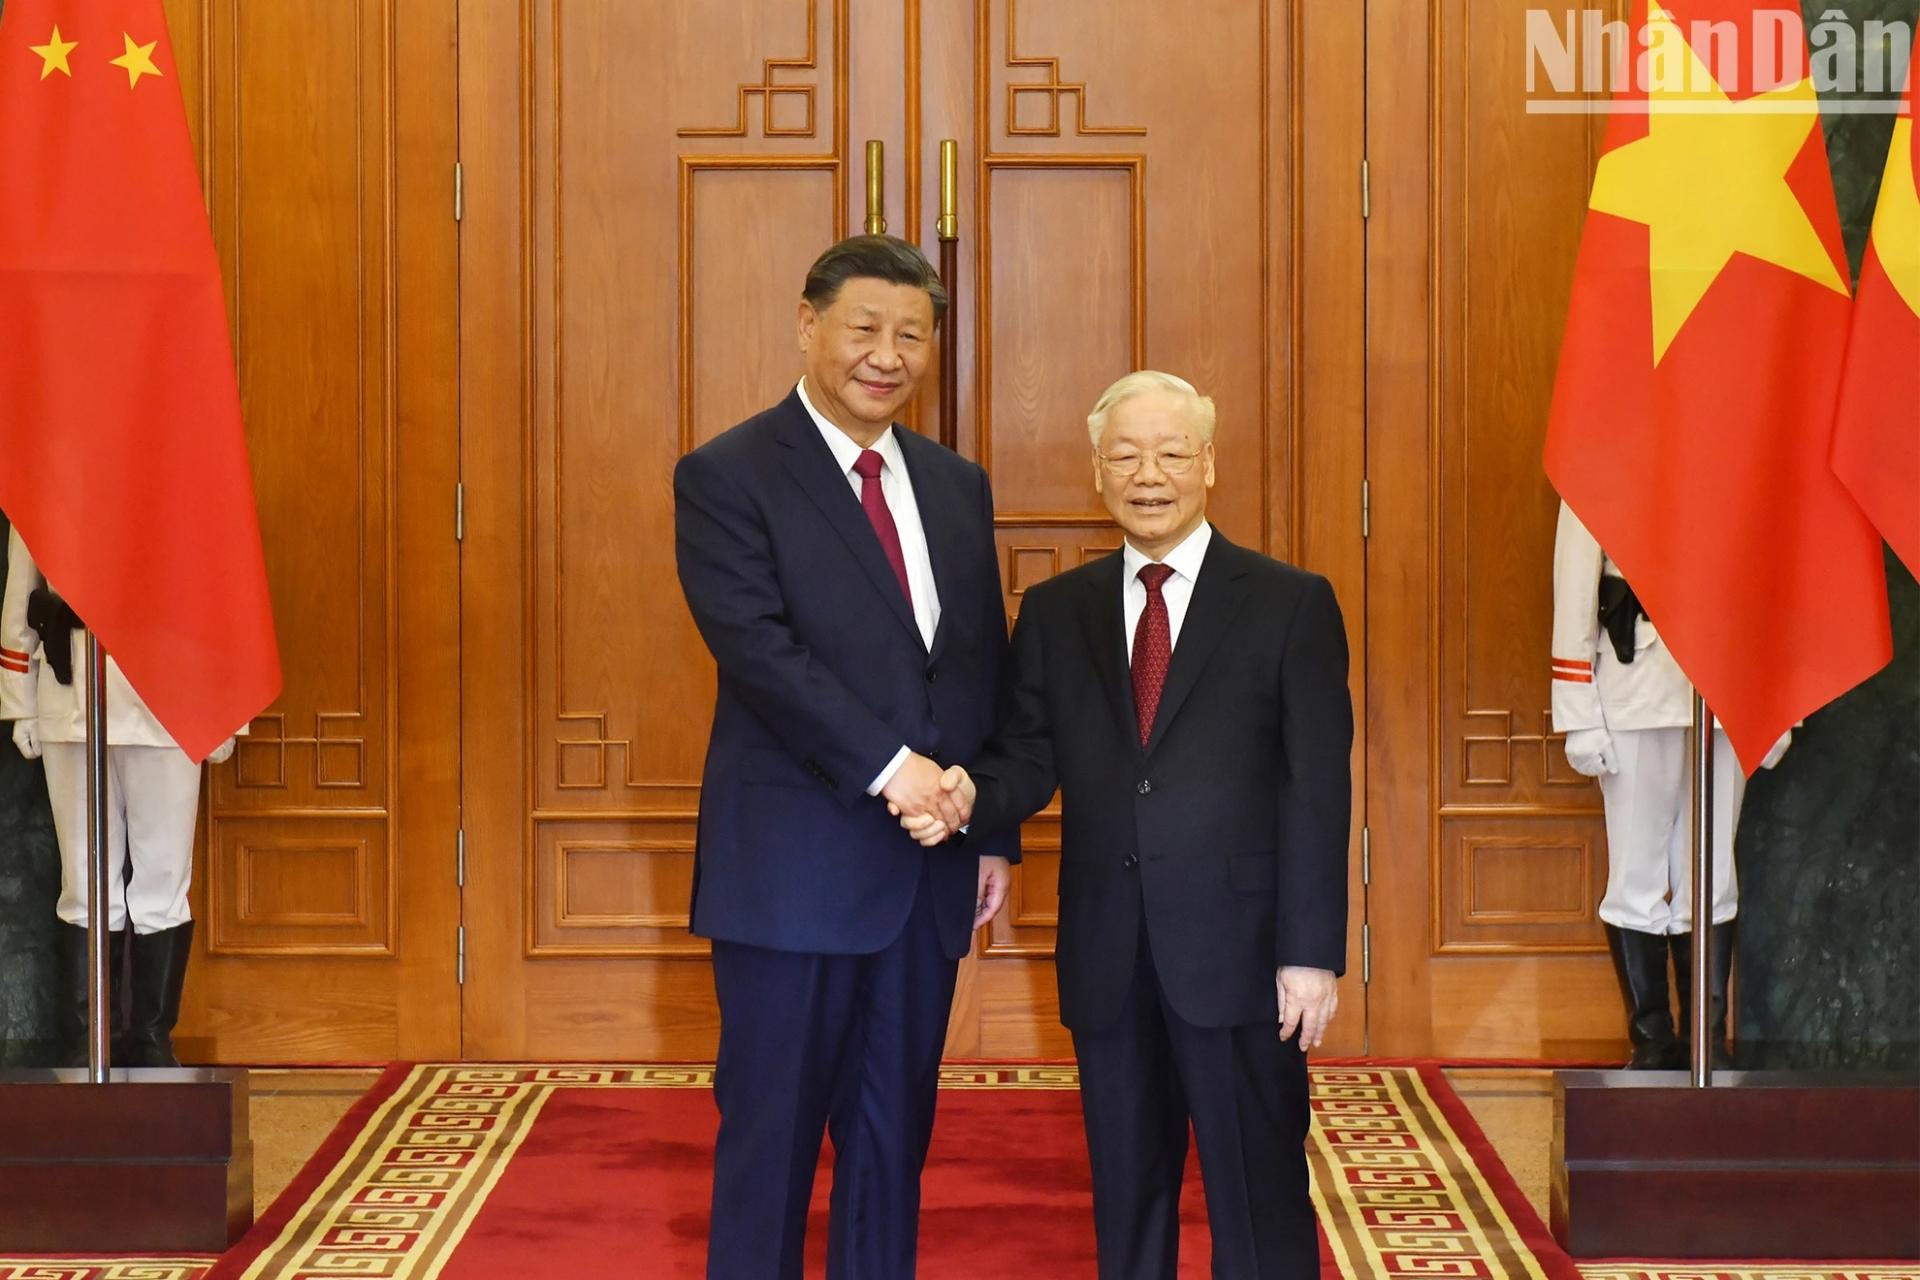 Tổng Bí thư Nguyễn Phú Trọng với Tổng Bí thư, Chủ tịch Trung Quốc Tập Cận Bình tại Trụ sở Trung ương Đảng.